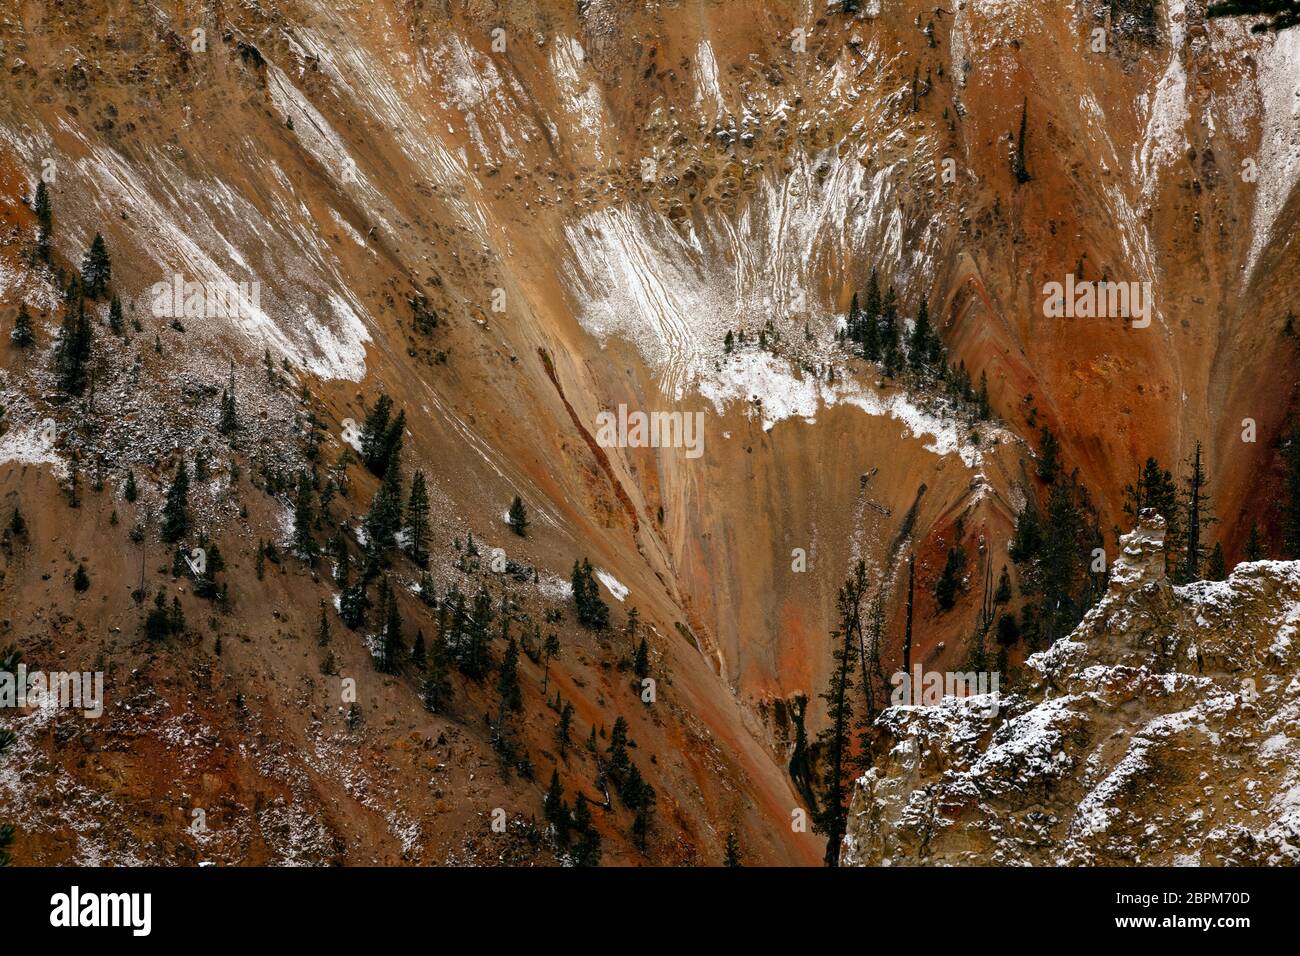 WY04412-00...WYOMING - neve sulle pareti colorate del Grand Canyon del Yellowstone sotto l'Artist Point nel Parco Nazionale di Yellowstone. Foto Stock